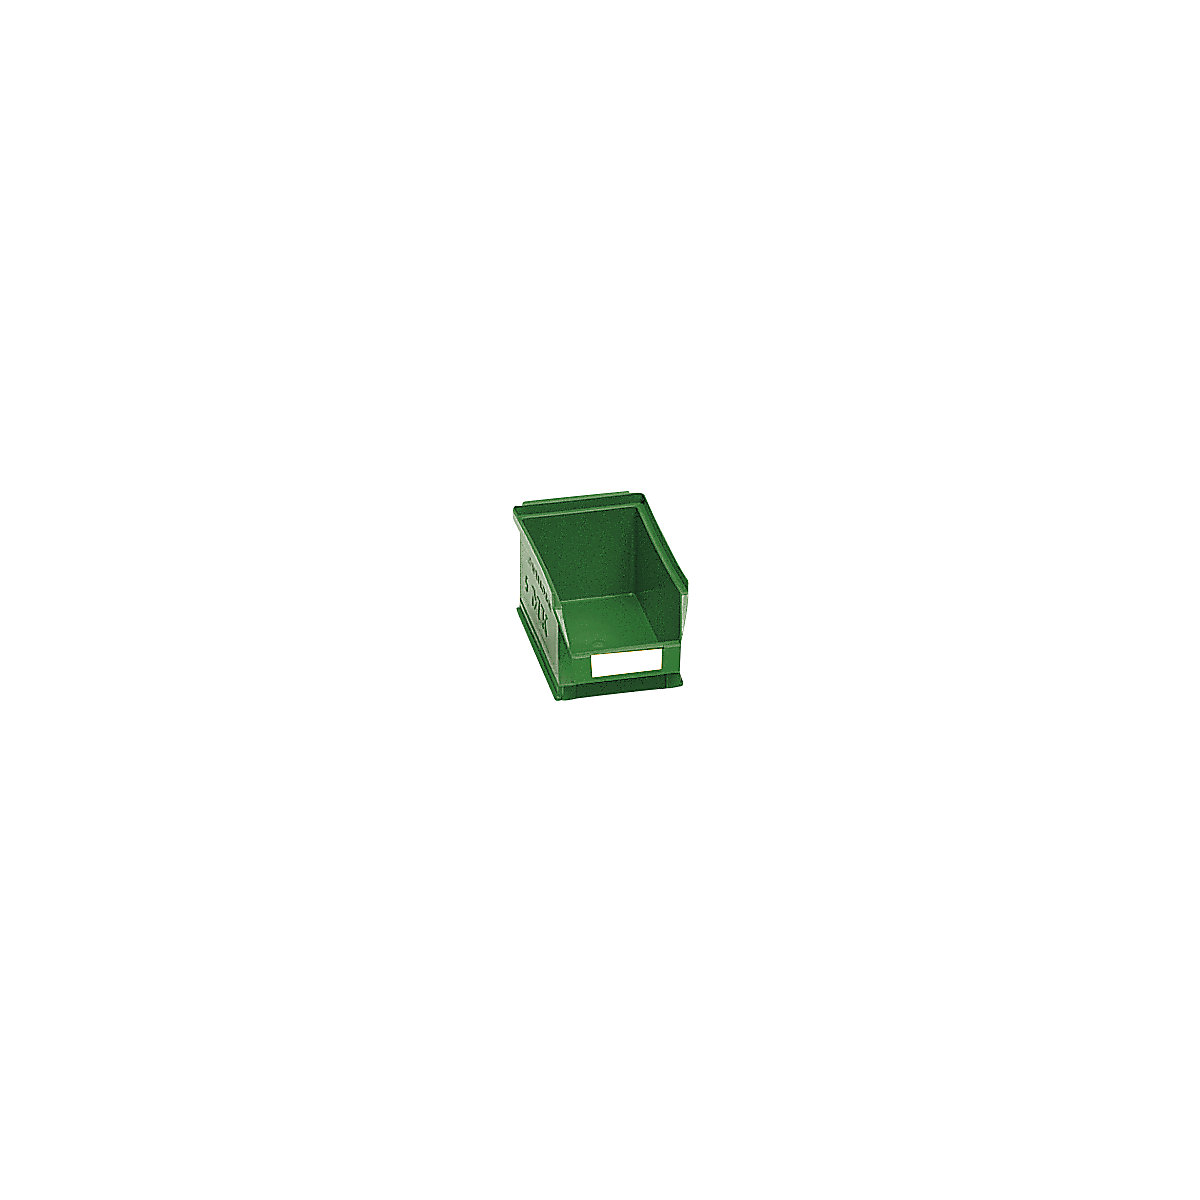 Prepravka s viditeľným obsahom z polyetylénu – mauser, d x š x v 160 x 100 x 75 mm, zelená, OJ 25 ks-6